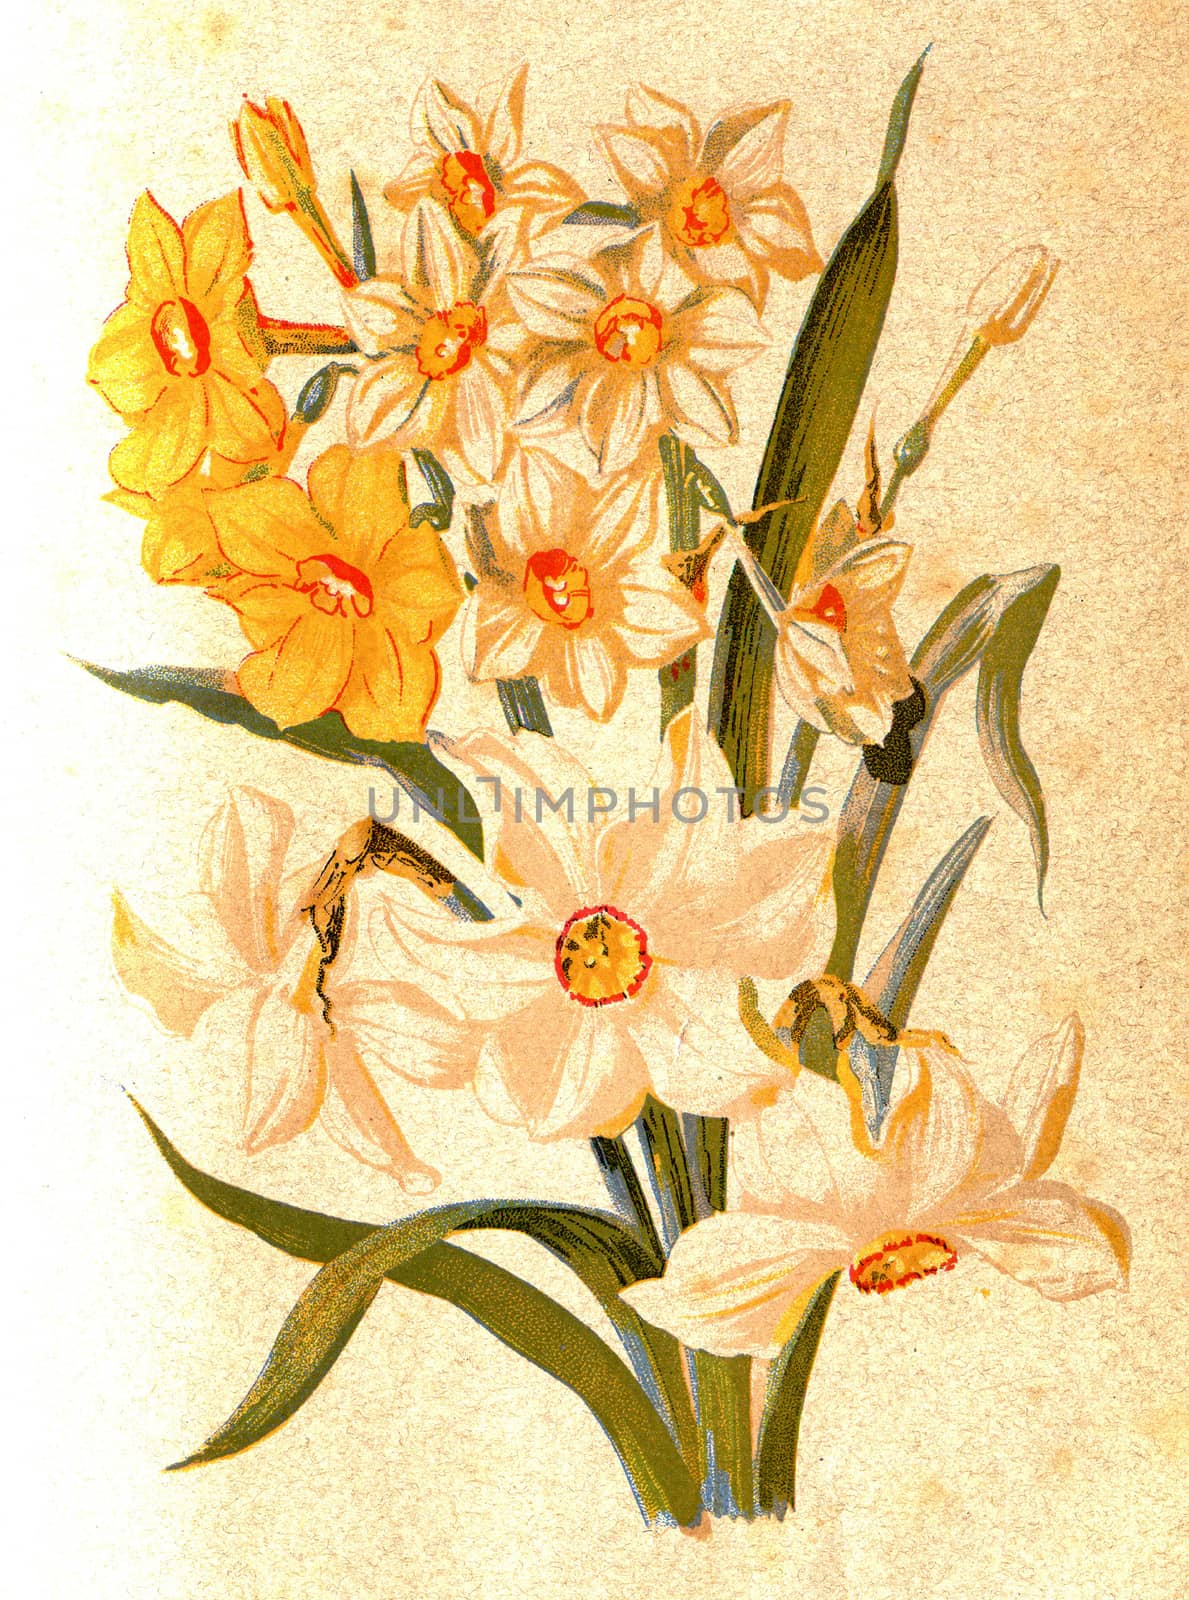 Narcissus, vintage engraved illustration.
